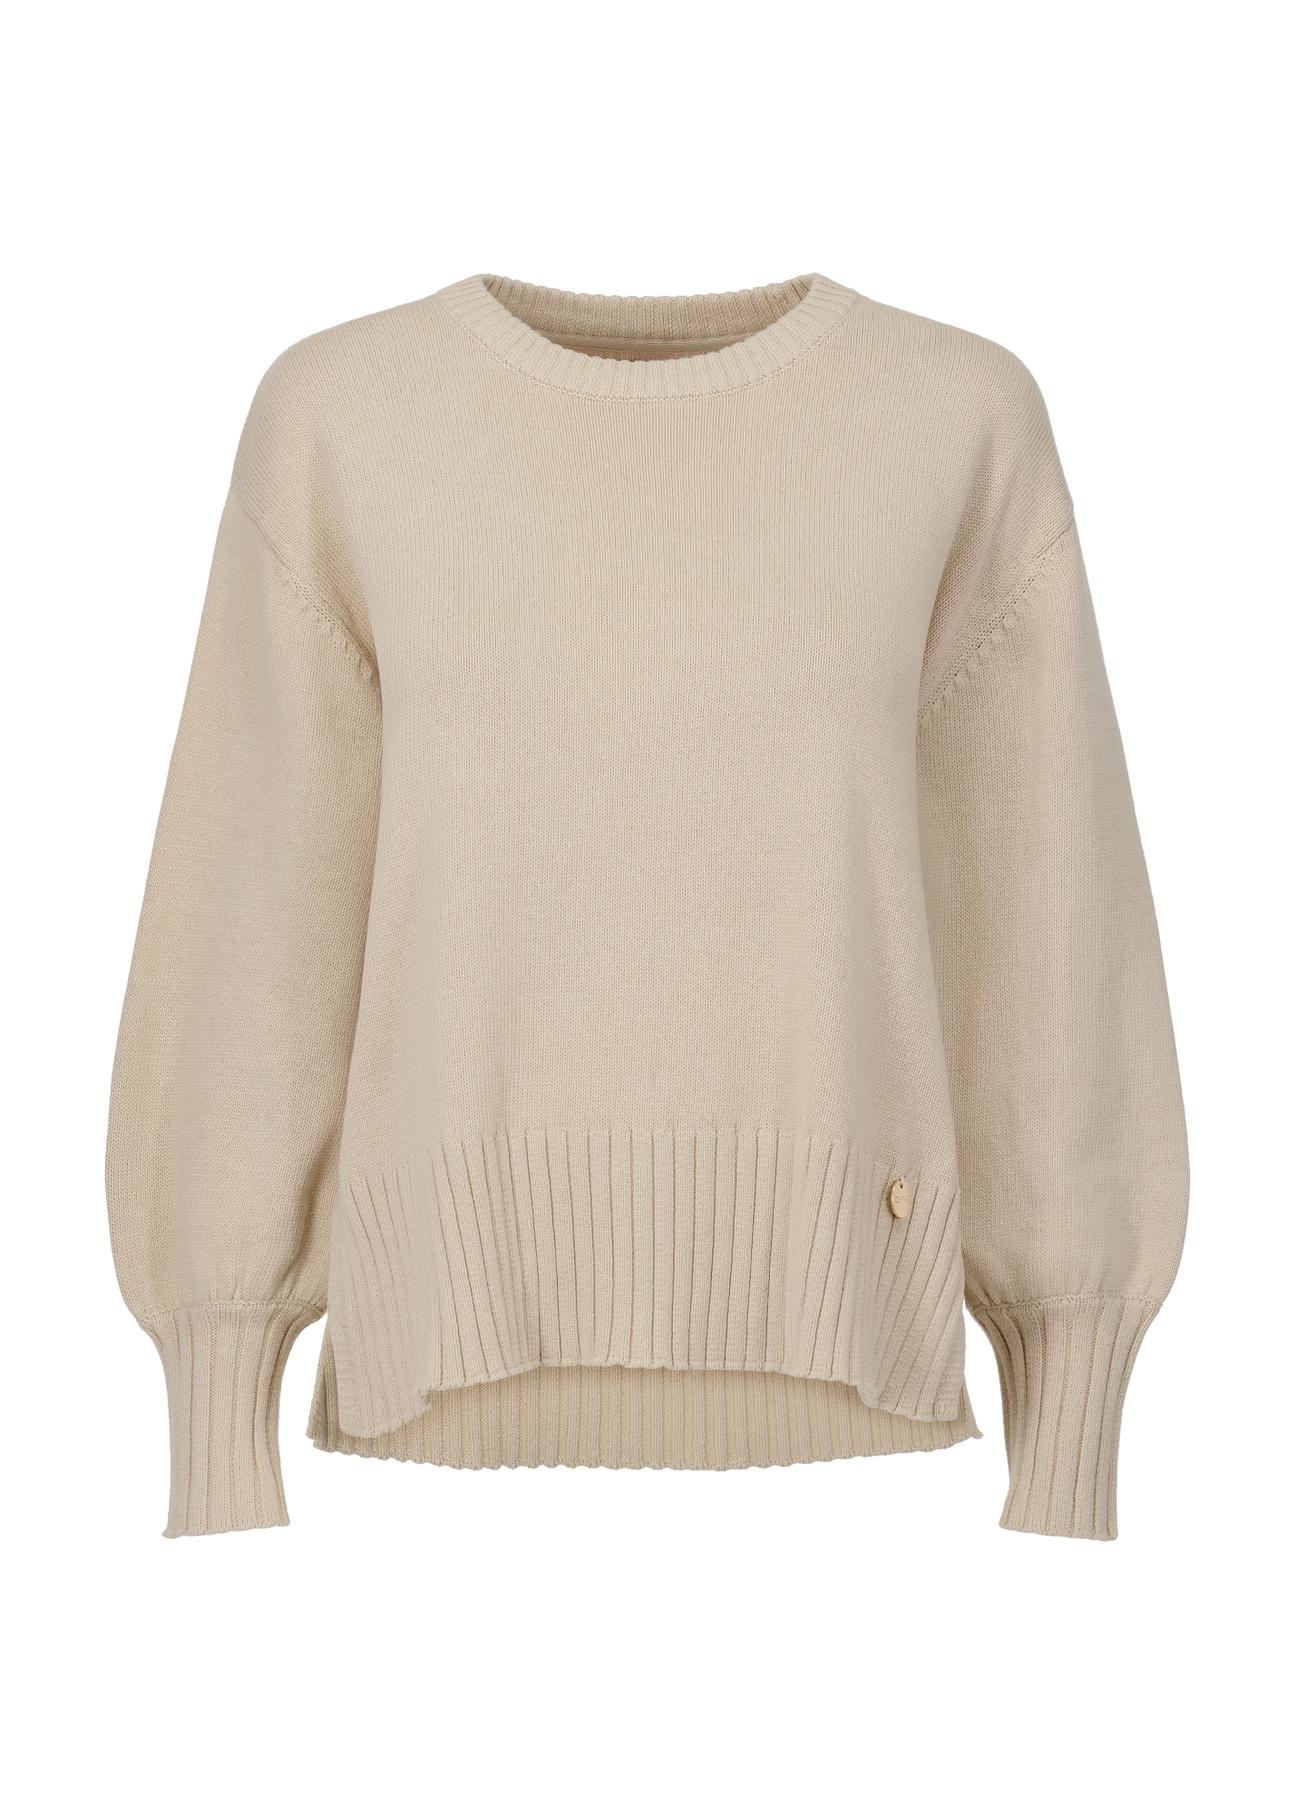 Bawełniany beżowy sweter damski basic SWEDT-0199-81(Z23)